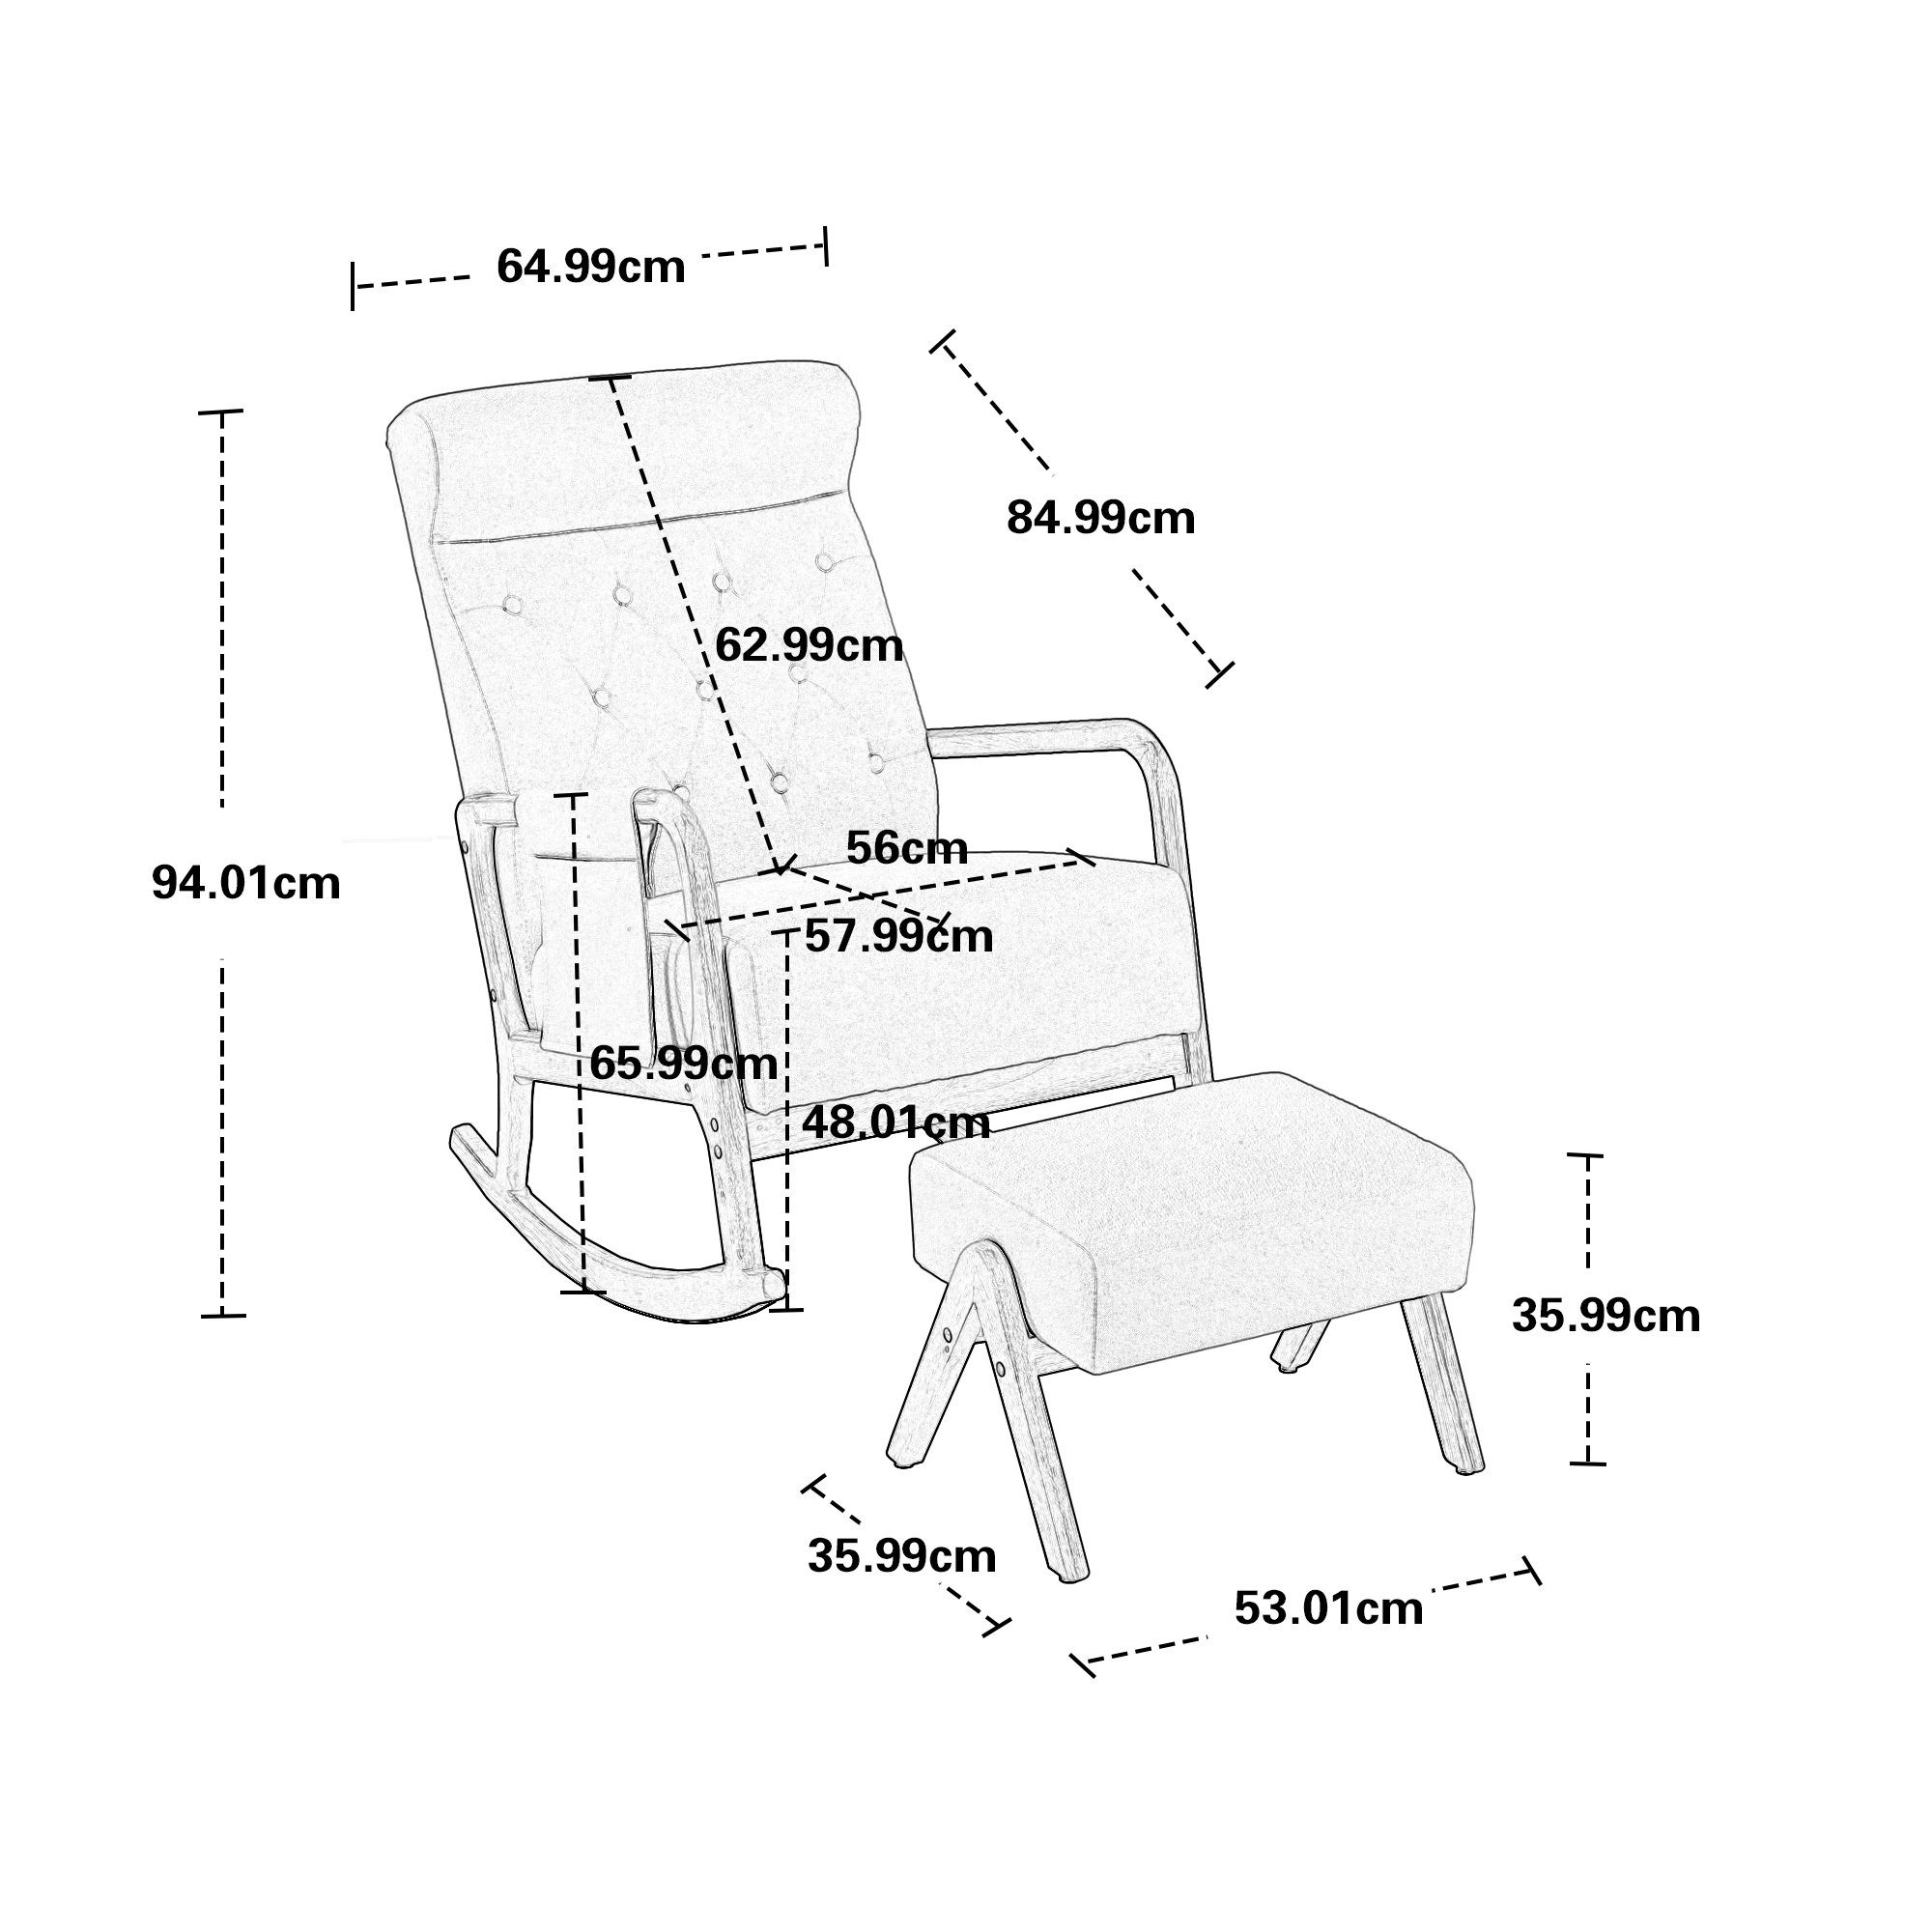 Odikalo Schaukelstuhl Lounge-Sessel Einzelstuhl mane gepolstert mehrfarbig Rückenlehne Grau